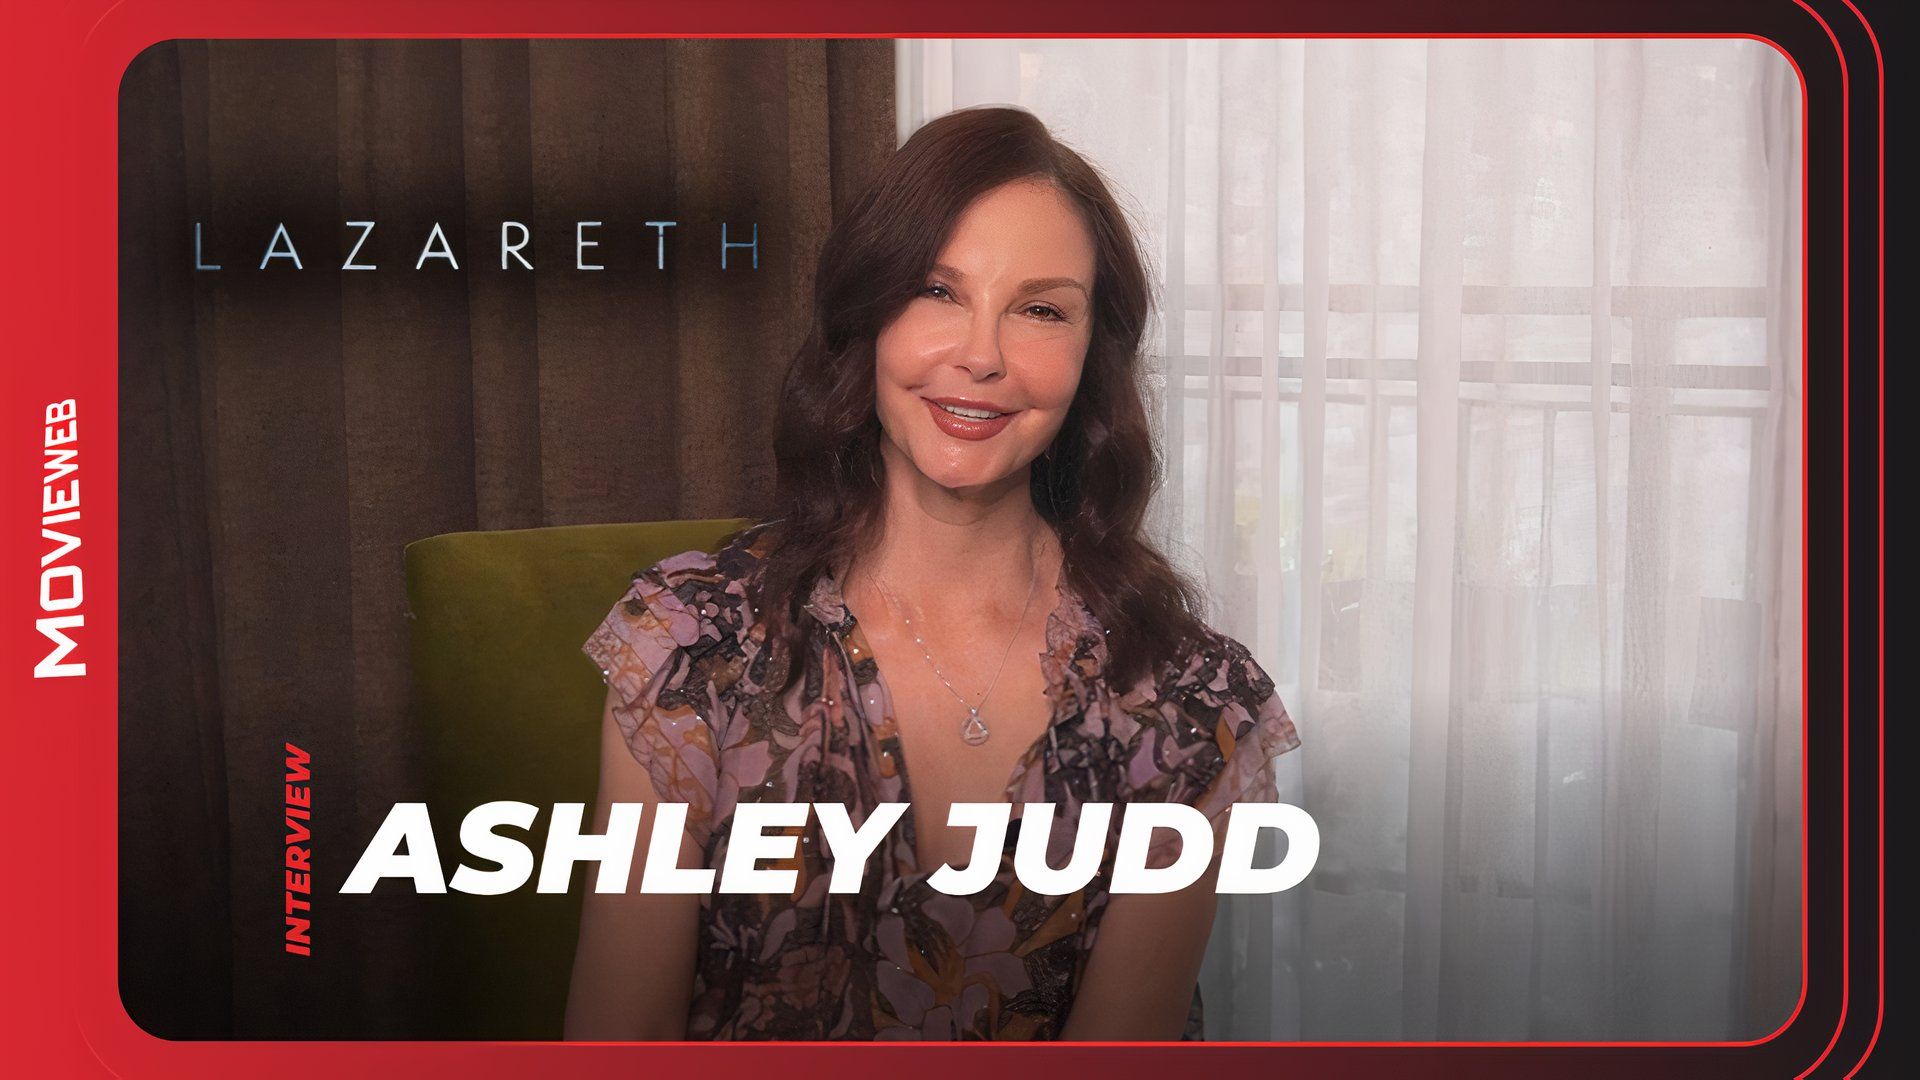 Lazareth - Ashley Judd Interview